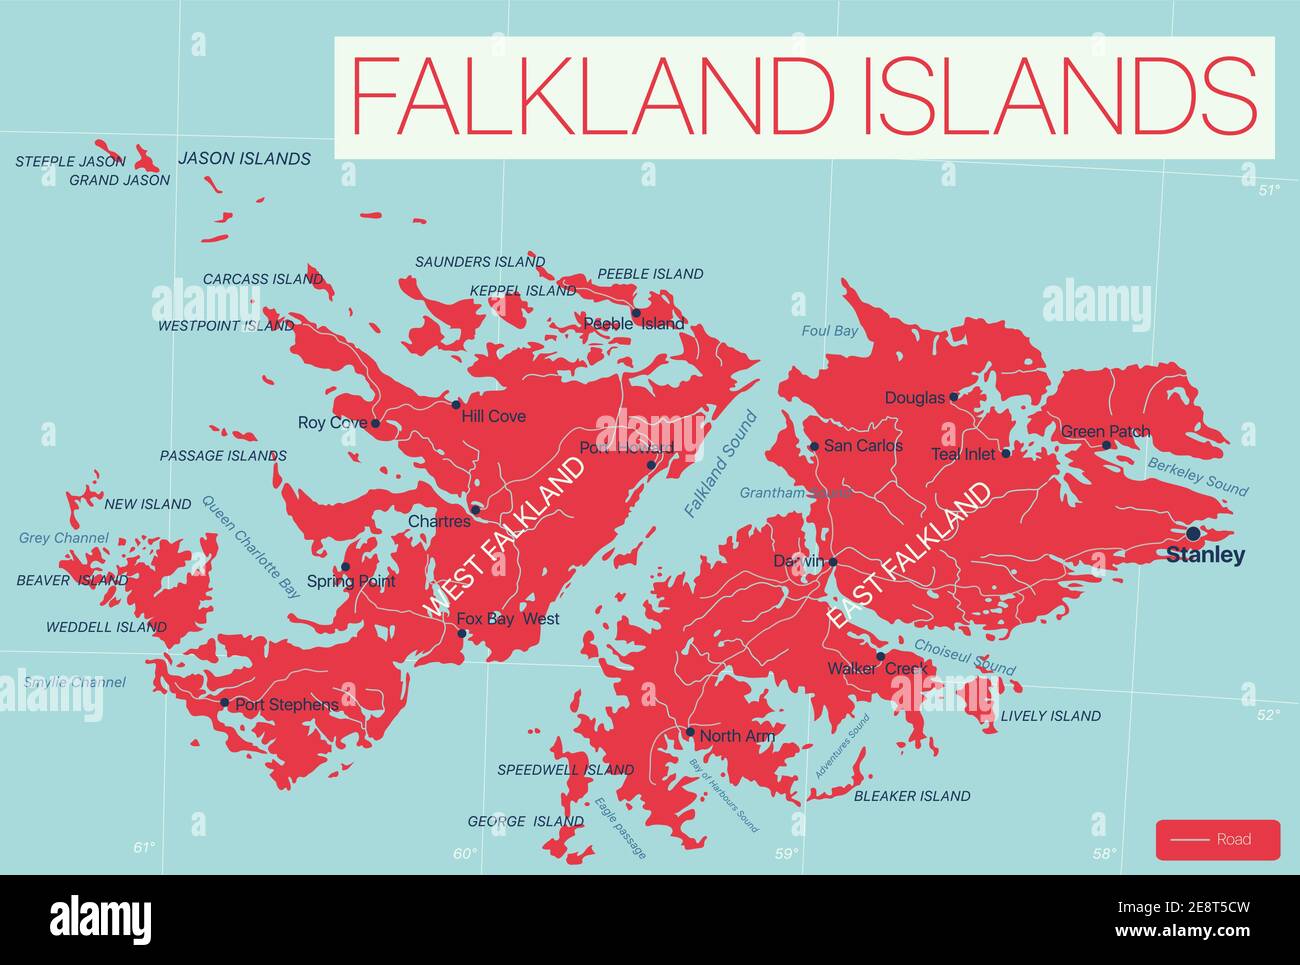 Falklandinseln Detaillierte bearbeitbare Karte mit Regionen Städte und Städte, Straßen und Eisenbahnen, geografische Standorte. Vector EPS-10-Datei Stock Vektor